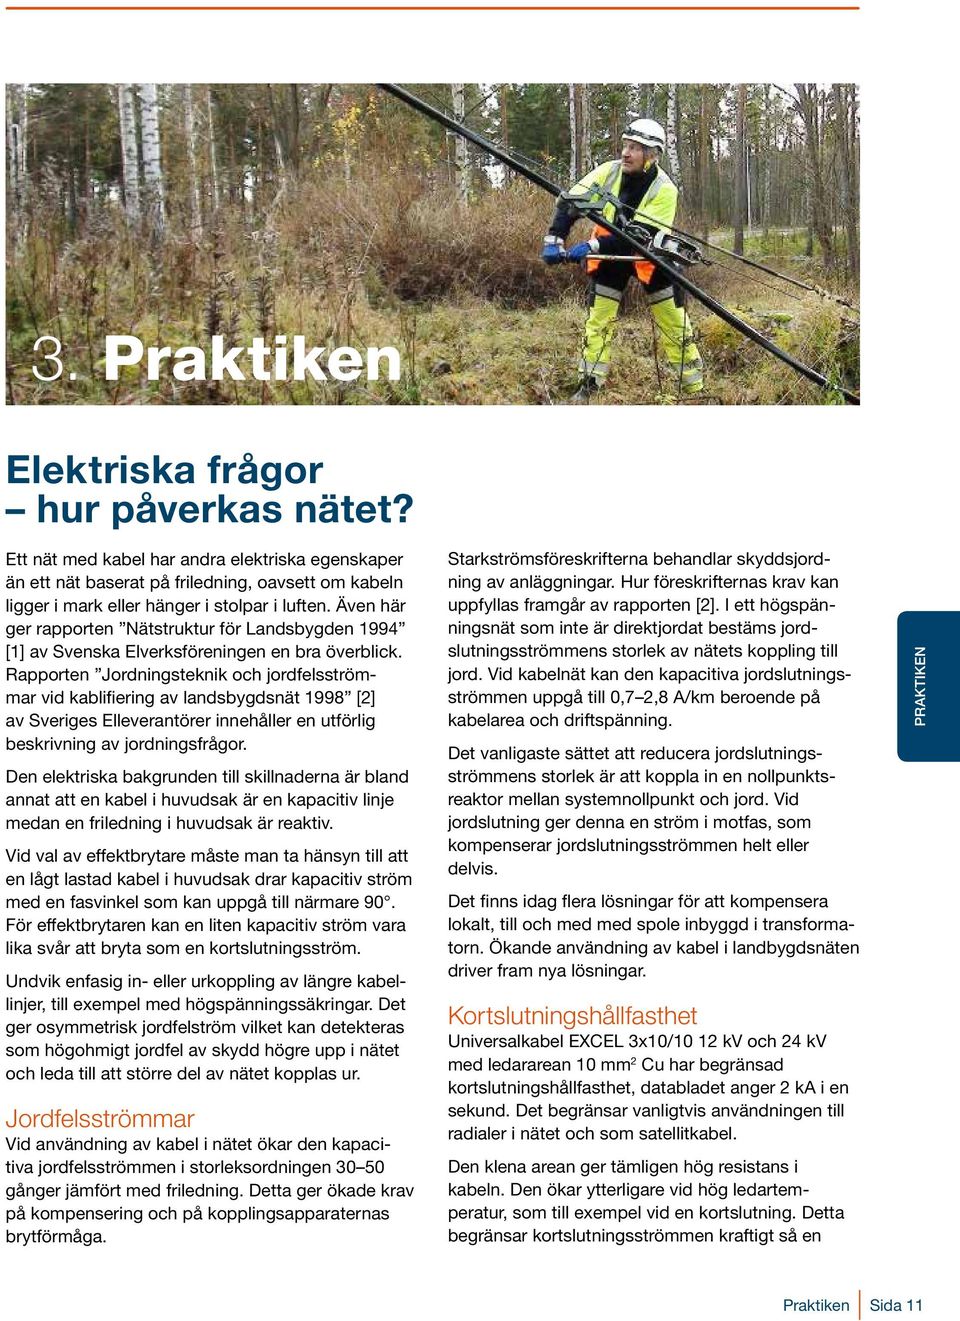 Rapporten Jordningsteknik och jordfelsströmmar vid kablifiering av landsbygdsnät 1998 [2] av Sveriges Elleverantörer innehåller en utförlig beskrivning av jordningsfrågor.